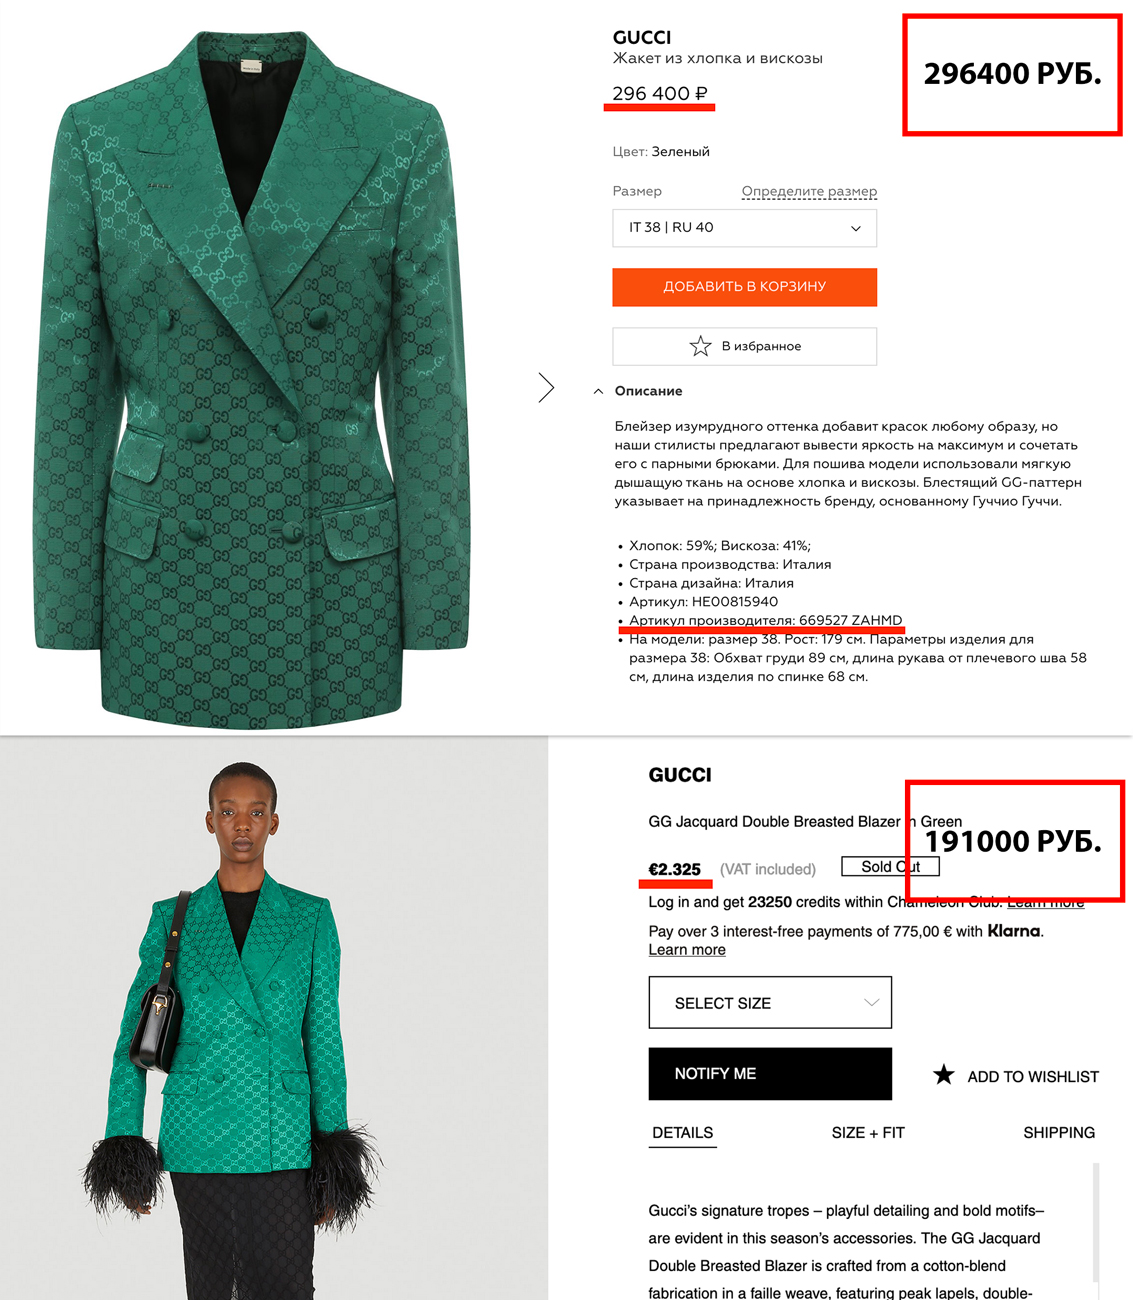 Жакет Gucci по цене почти 300 тысяч рублей в ЦУМе. В Европе жакет стоит меньше 200 тысяч рублей. Фото © ЦУМ, © ln-cc.com